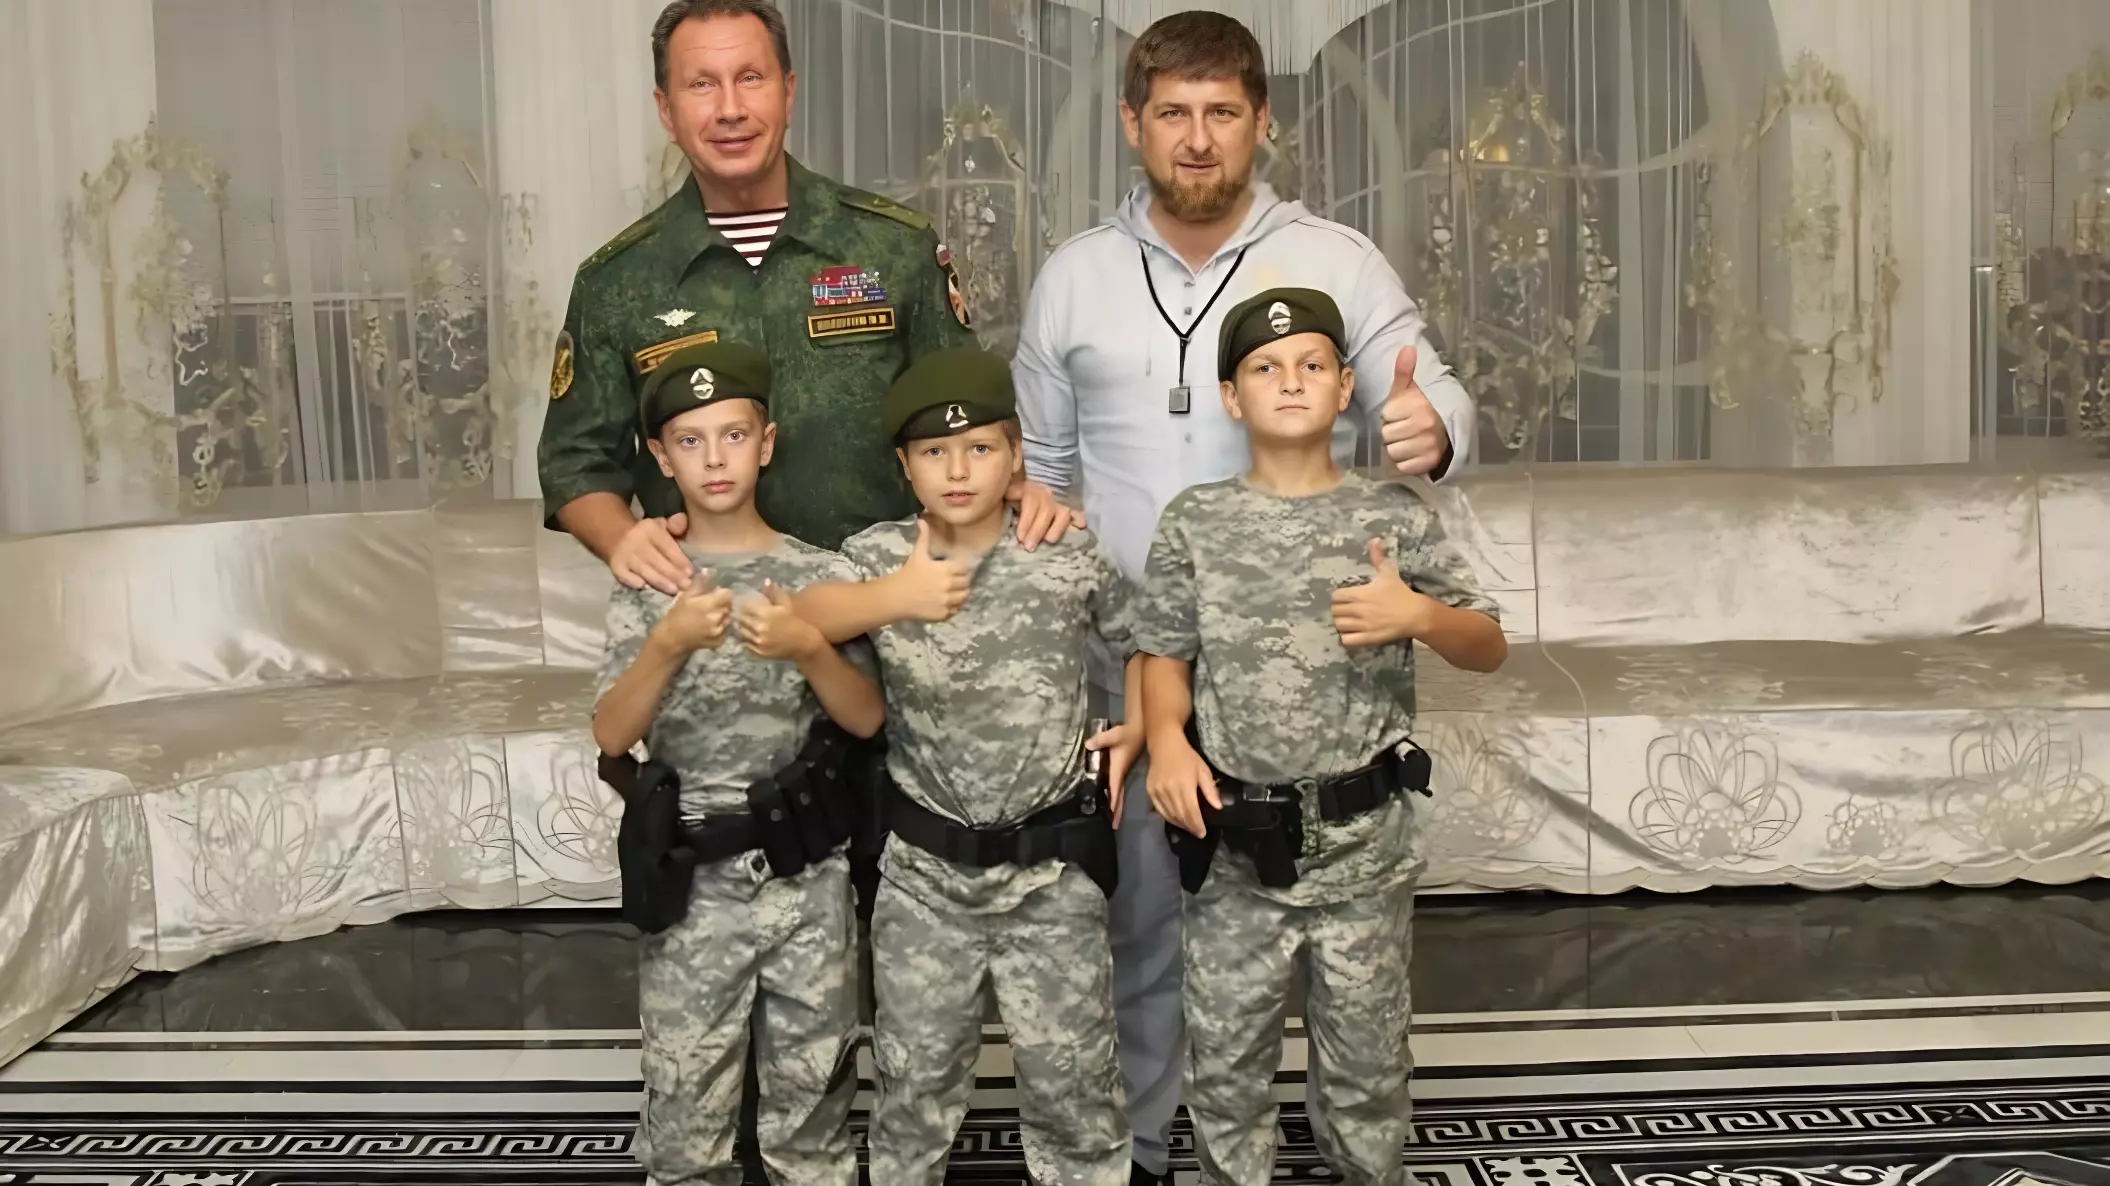 Кадыров поделился архивным снимком с сыновьями и главой Росгвардии Золотовым